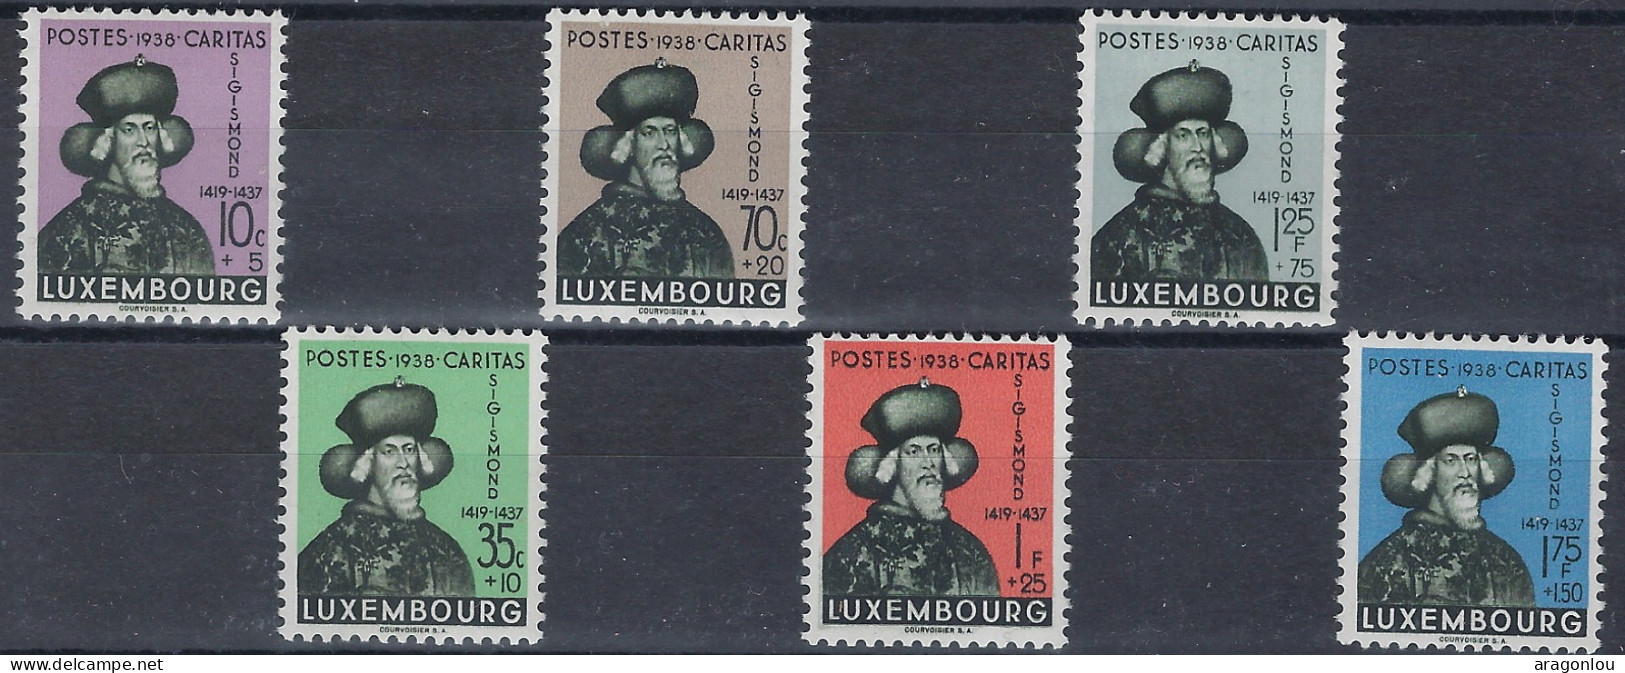 Luxembourg - Luxemburg - Timbres - Sigismund  1938  Série  * - Gebruikt